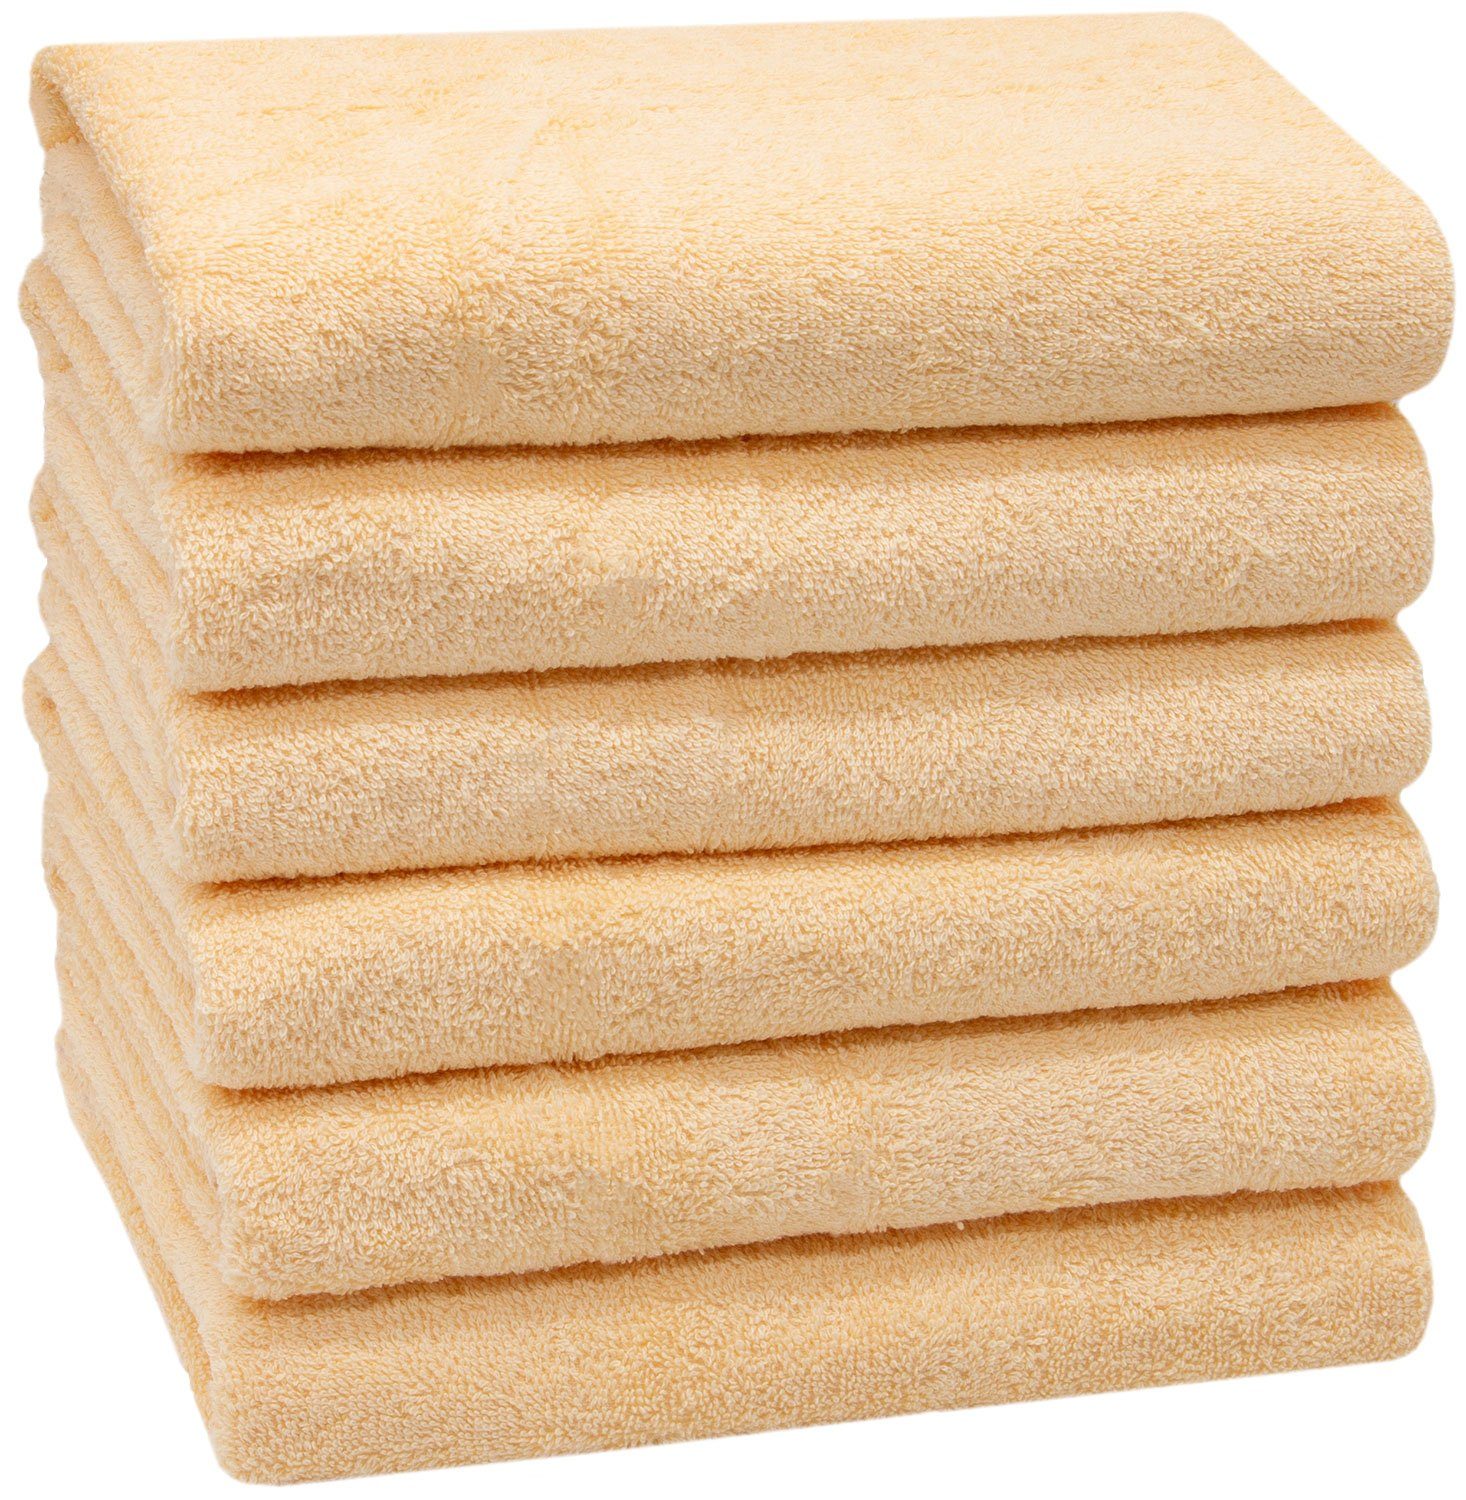 Handtuch 2er Pack 50x100 cm 100% Baumwolle Beige 